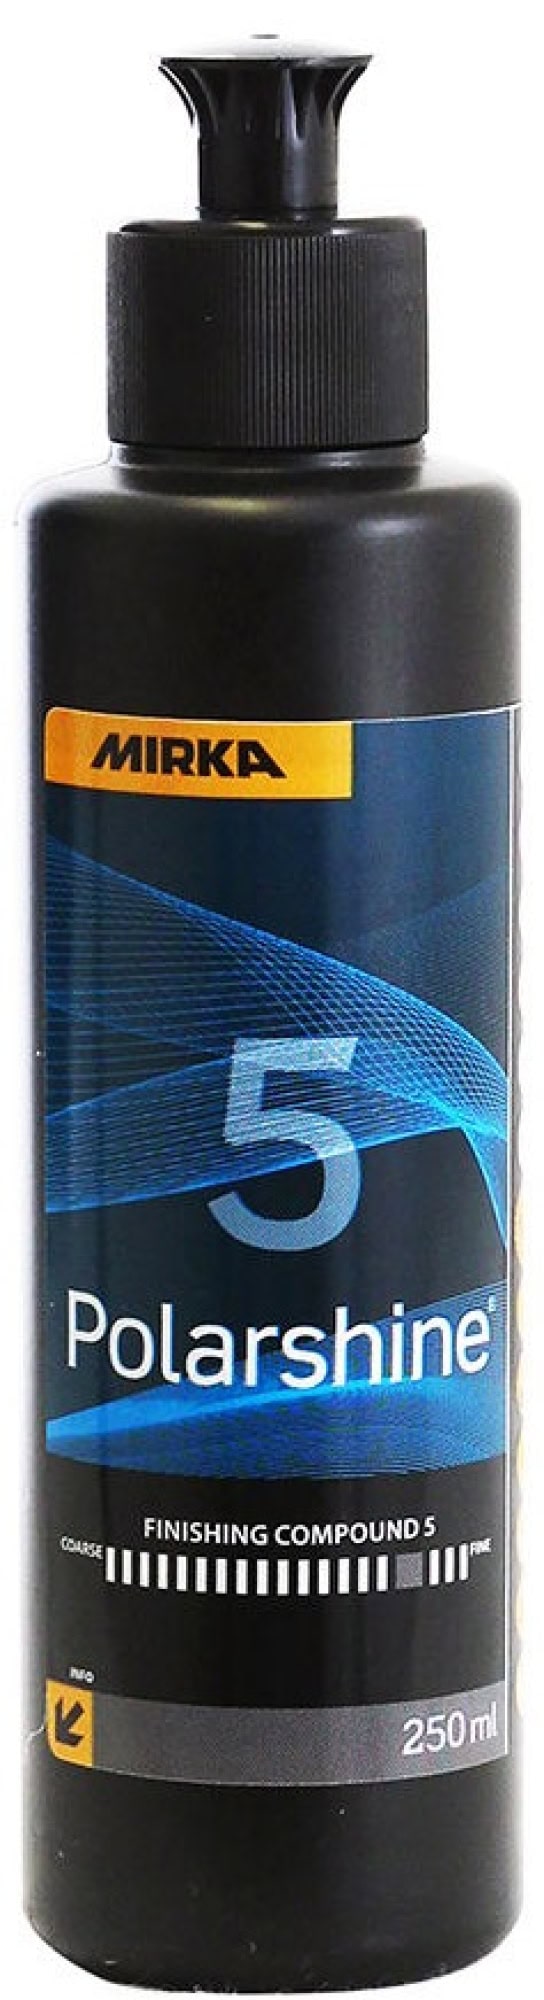 Mirka® Polarshine 5 7990502511, 250 ml, Mittelfeine Politur zum Auffrischen von matten Oberflächen